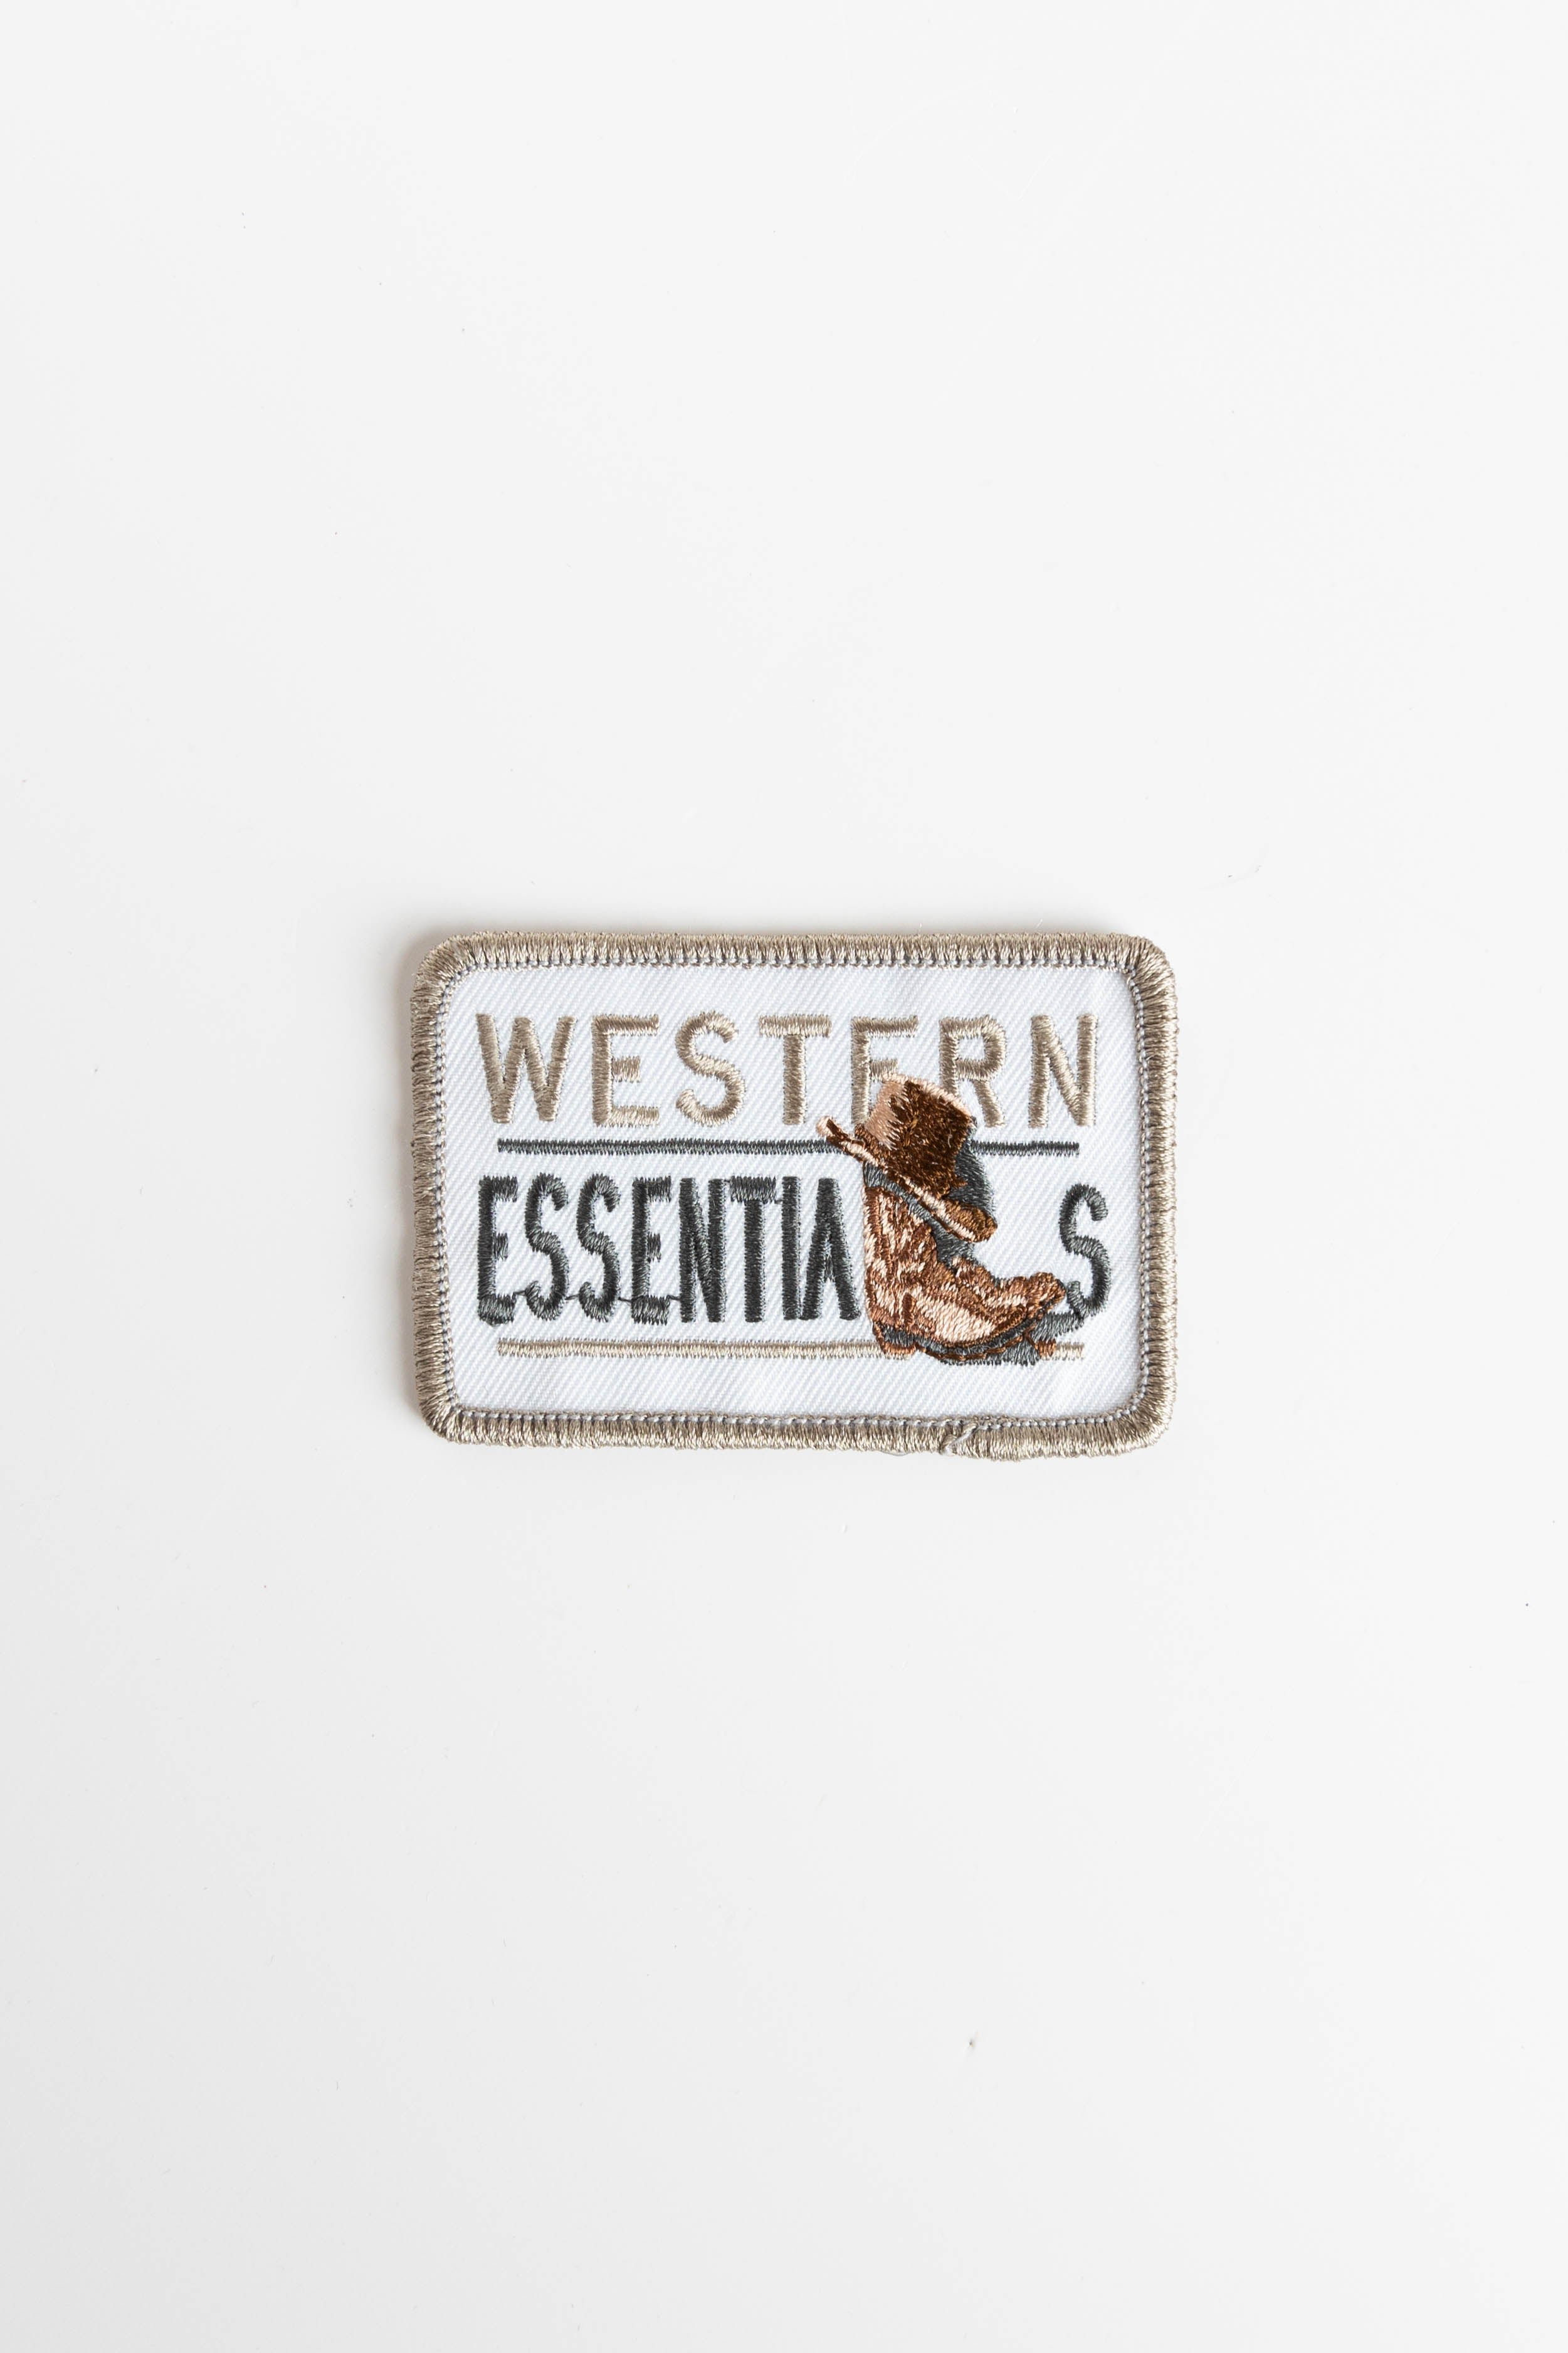 Western Essentials Patch